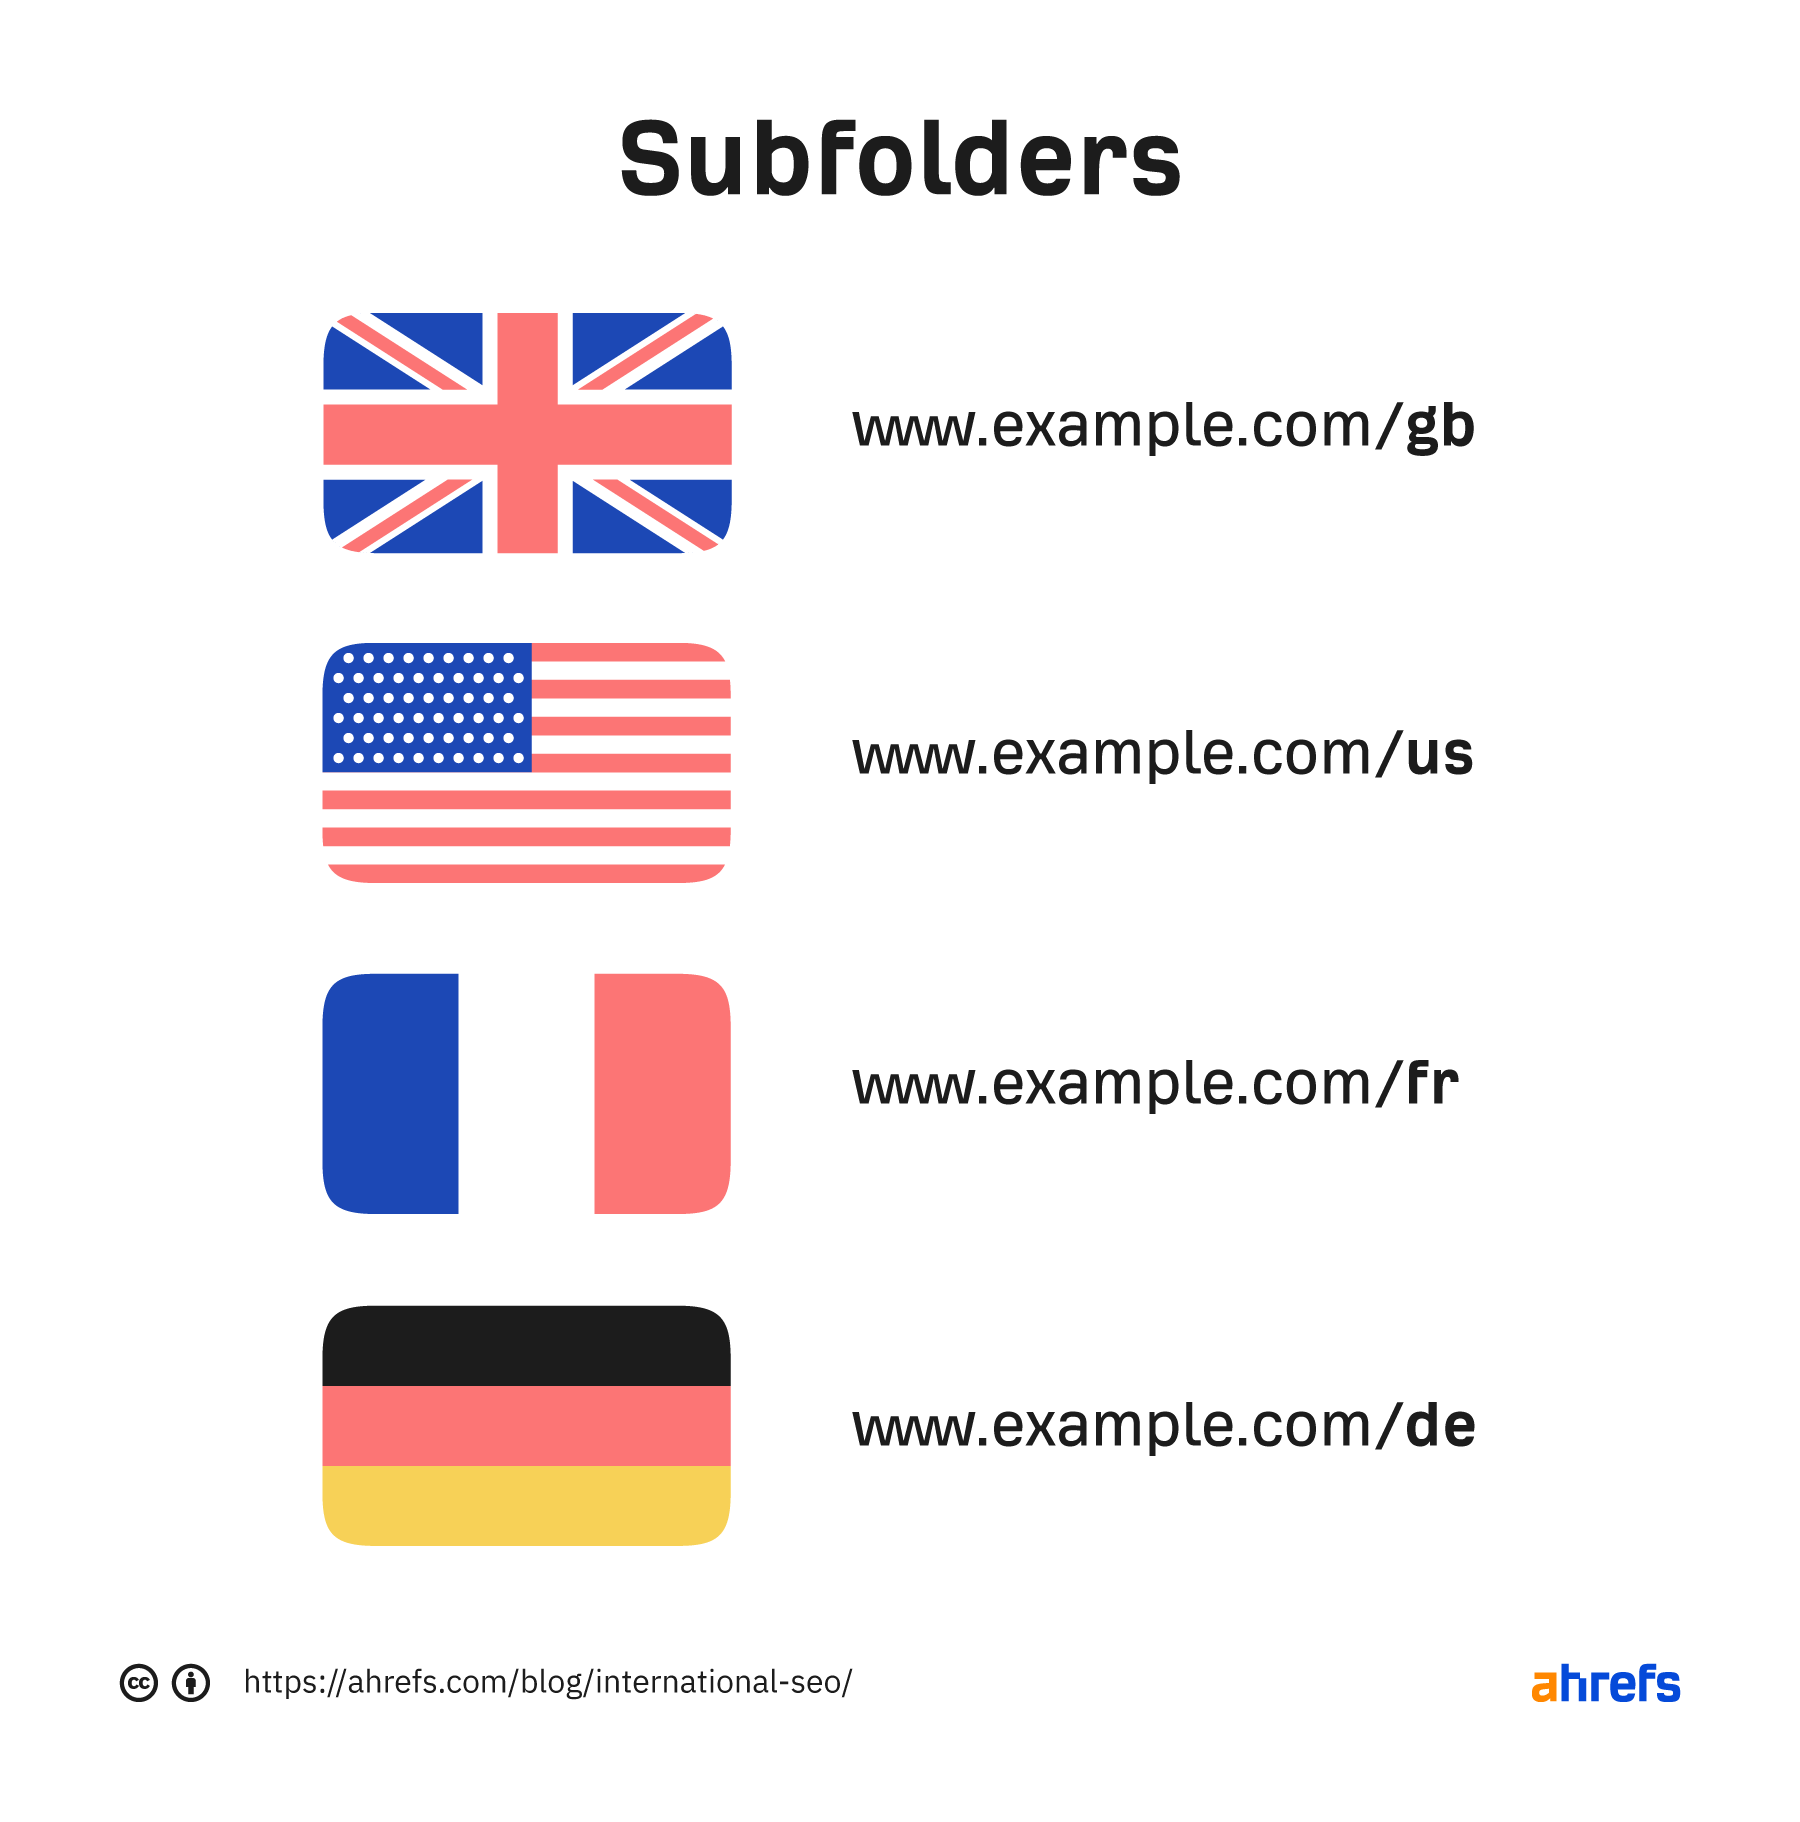 Subfolders
